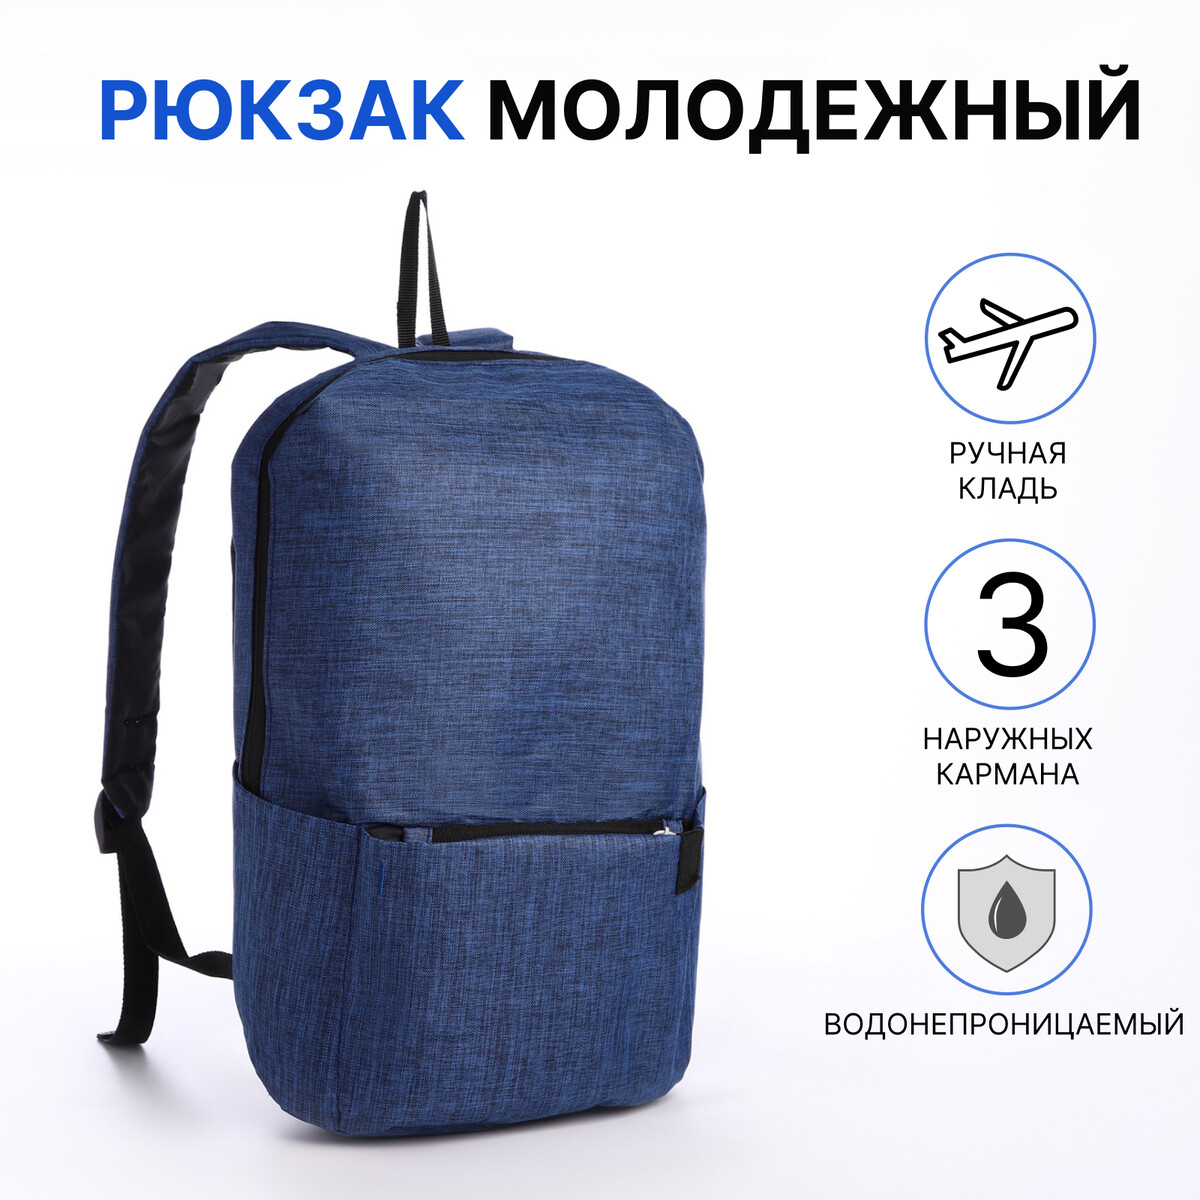 Рюкзак молодежный из текстиля на молнии, водонепроницаемый, наружный карман, цвет синий рюкзак bruno visconti молодежный синий copyleft арт 12 003 148 02